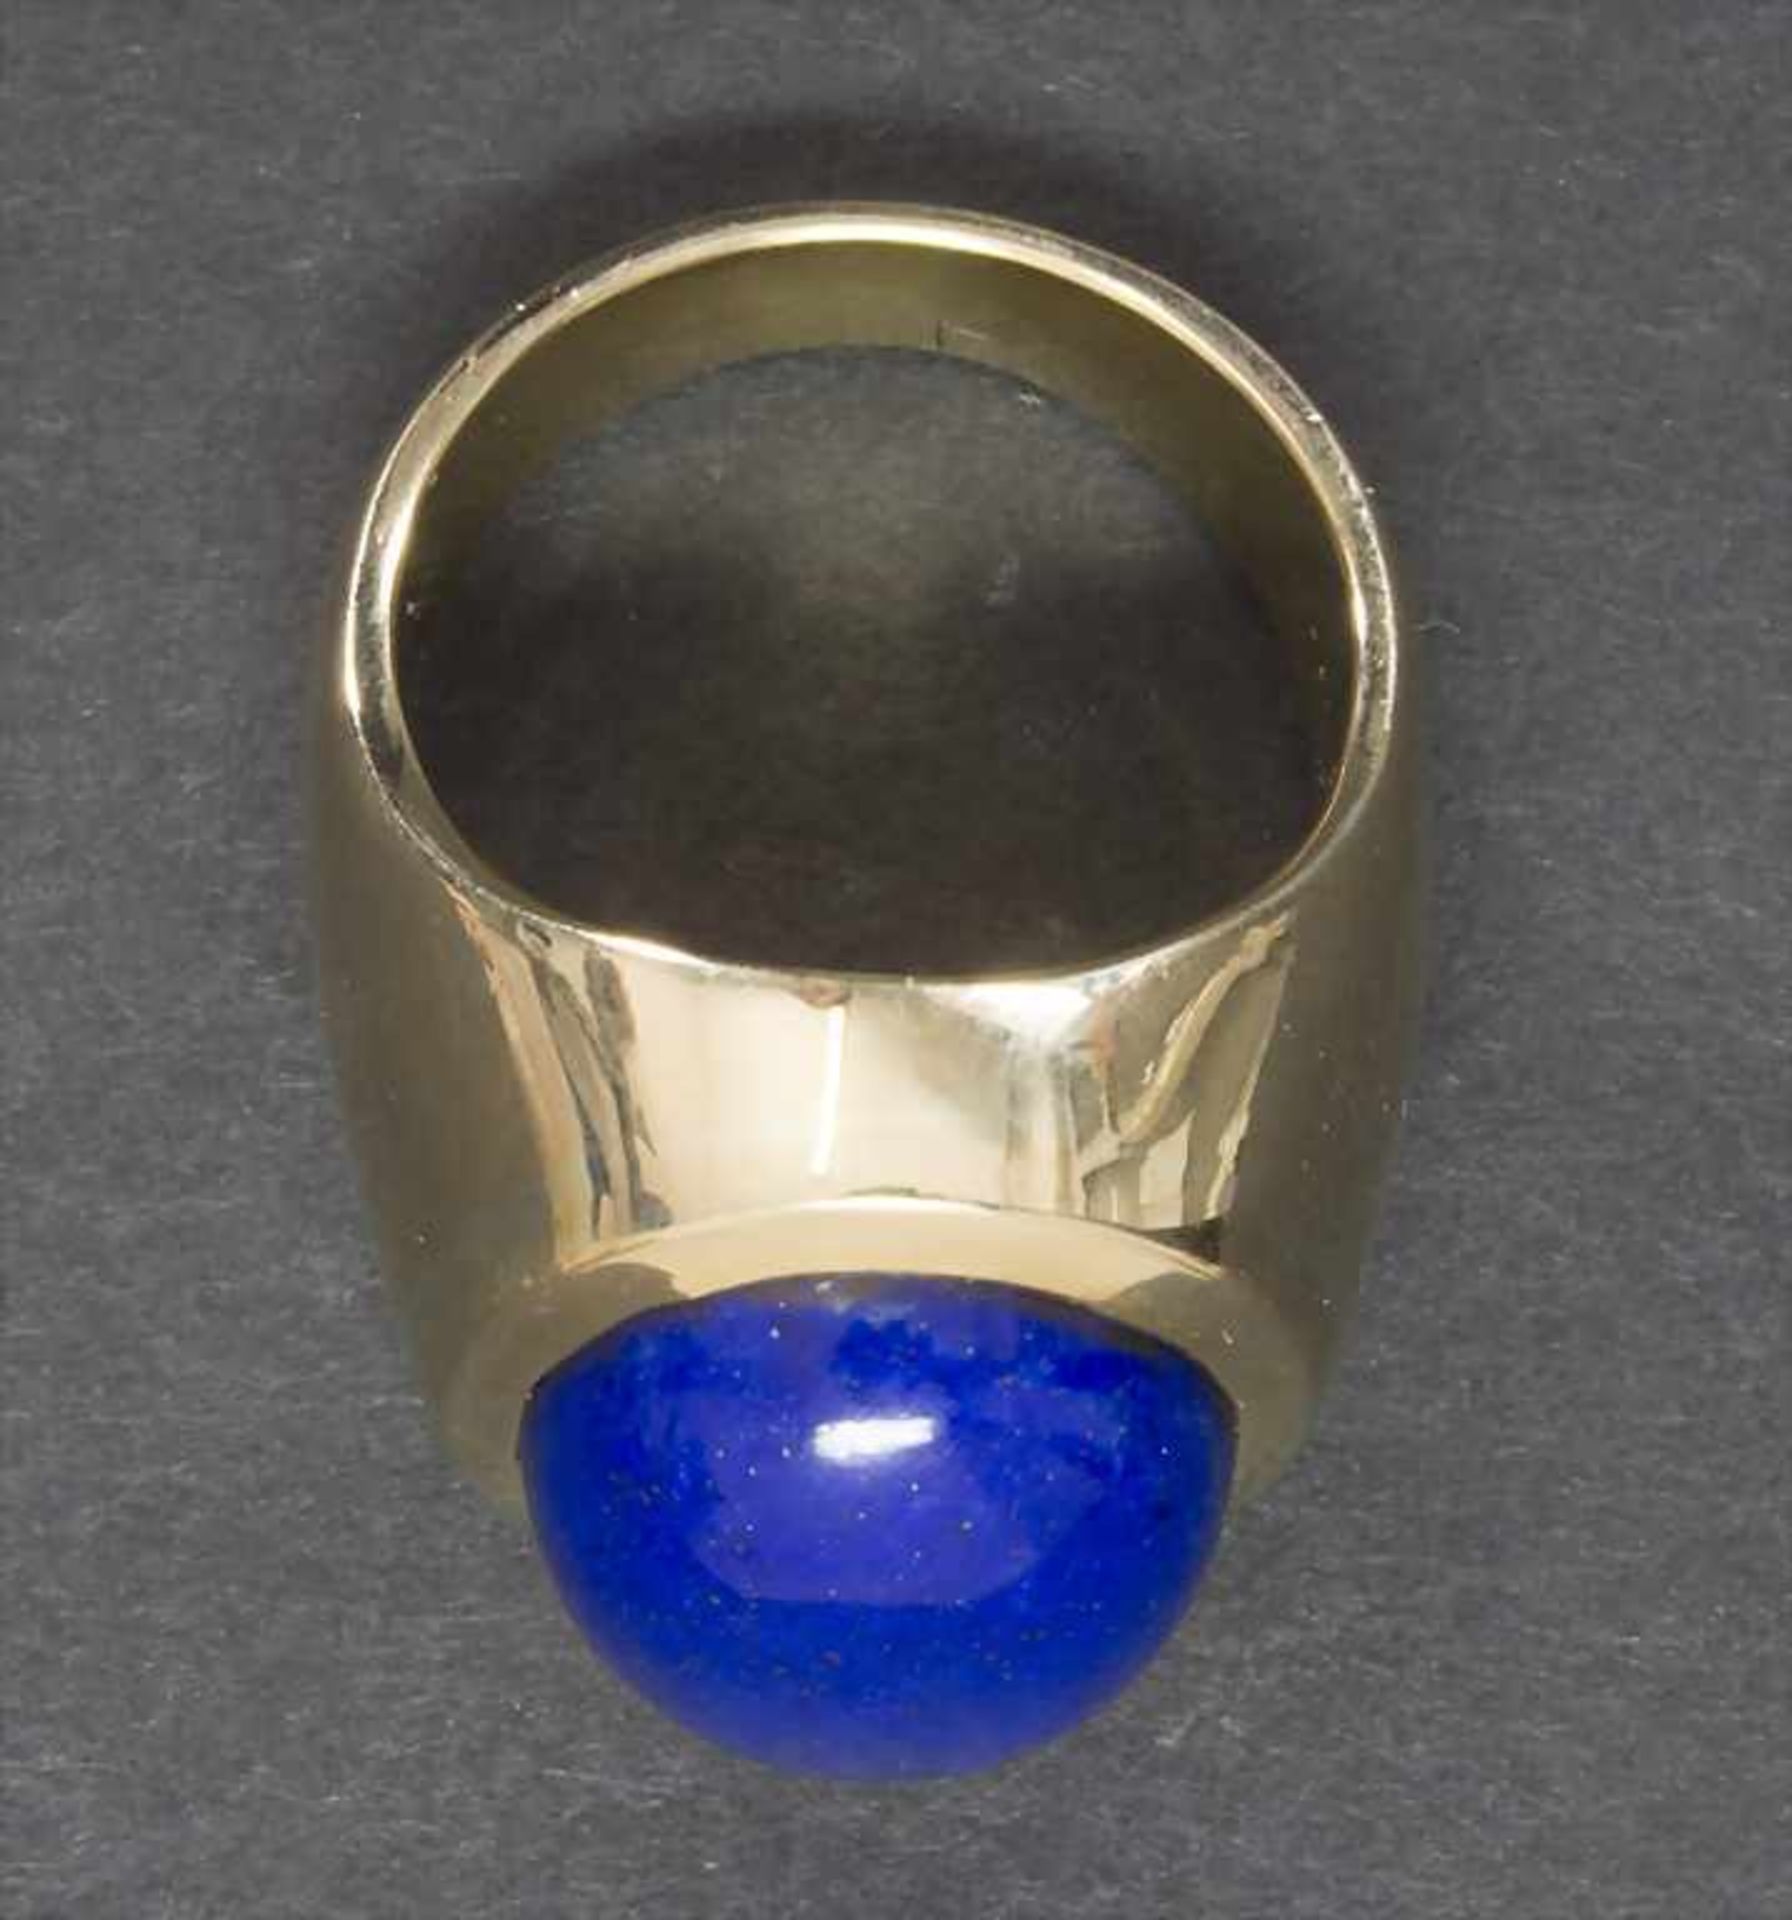 Herrenring mit Lapislazuli / A men's ring with lapis lazuli - Image 2 of 3